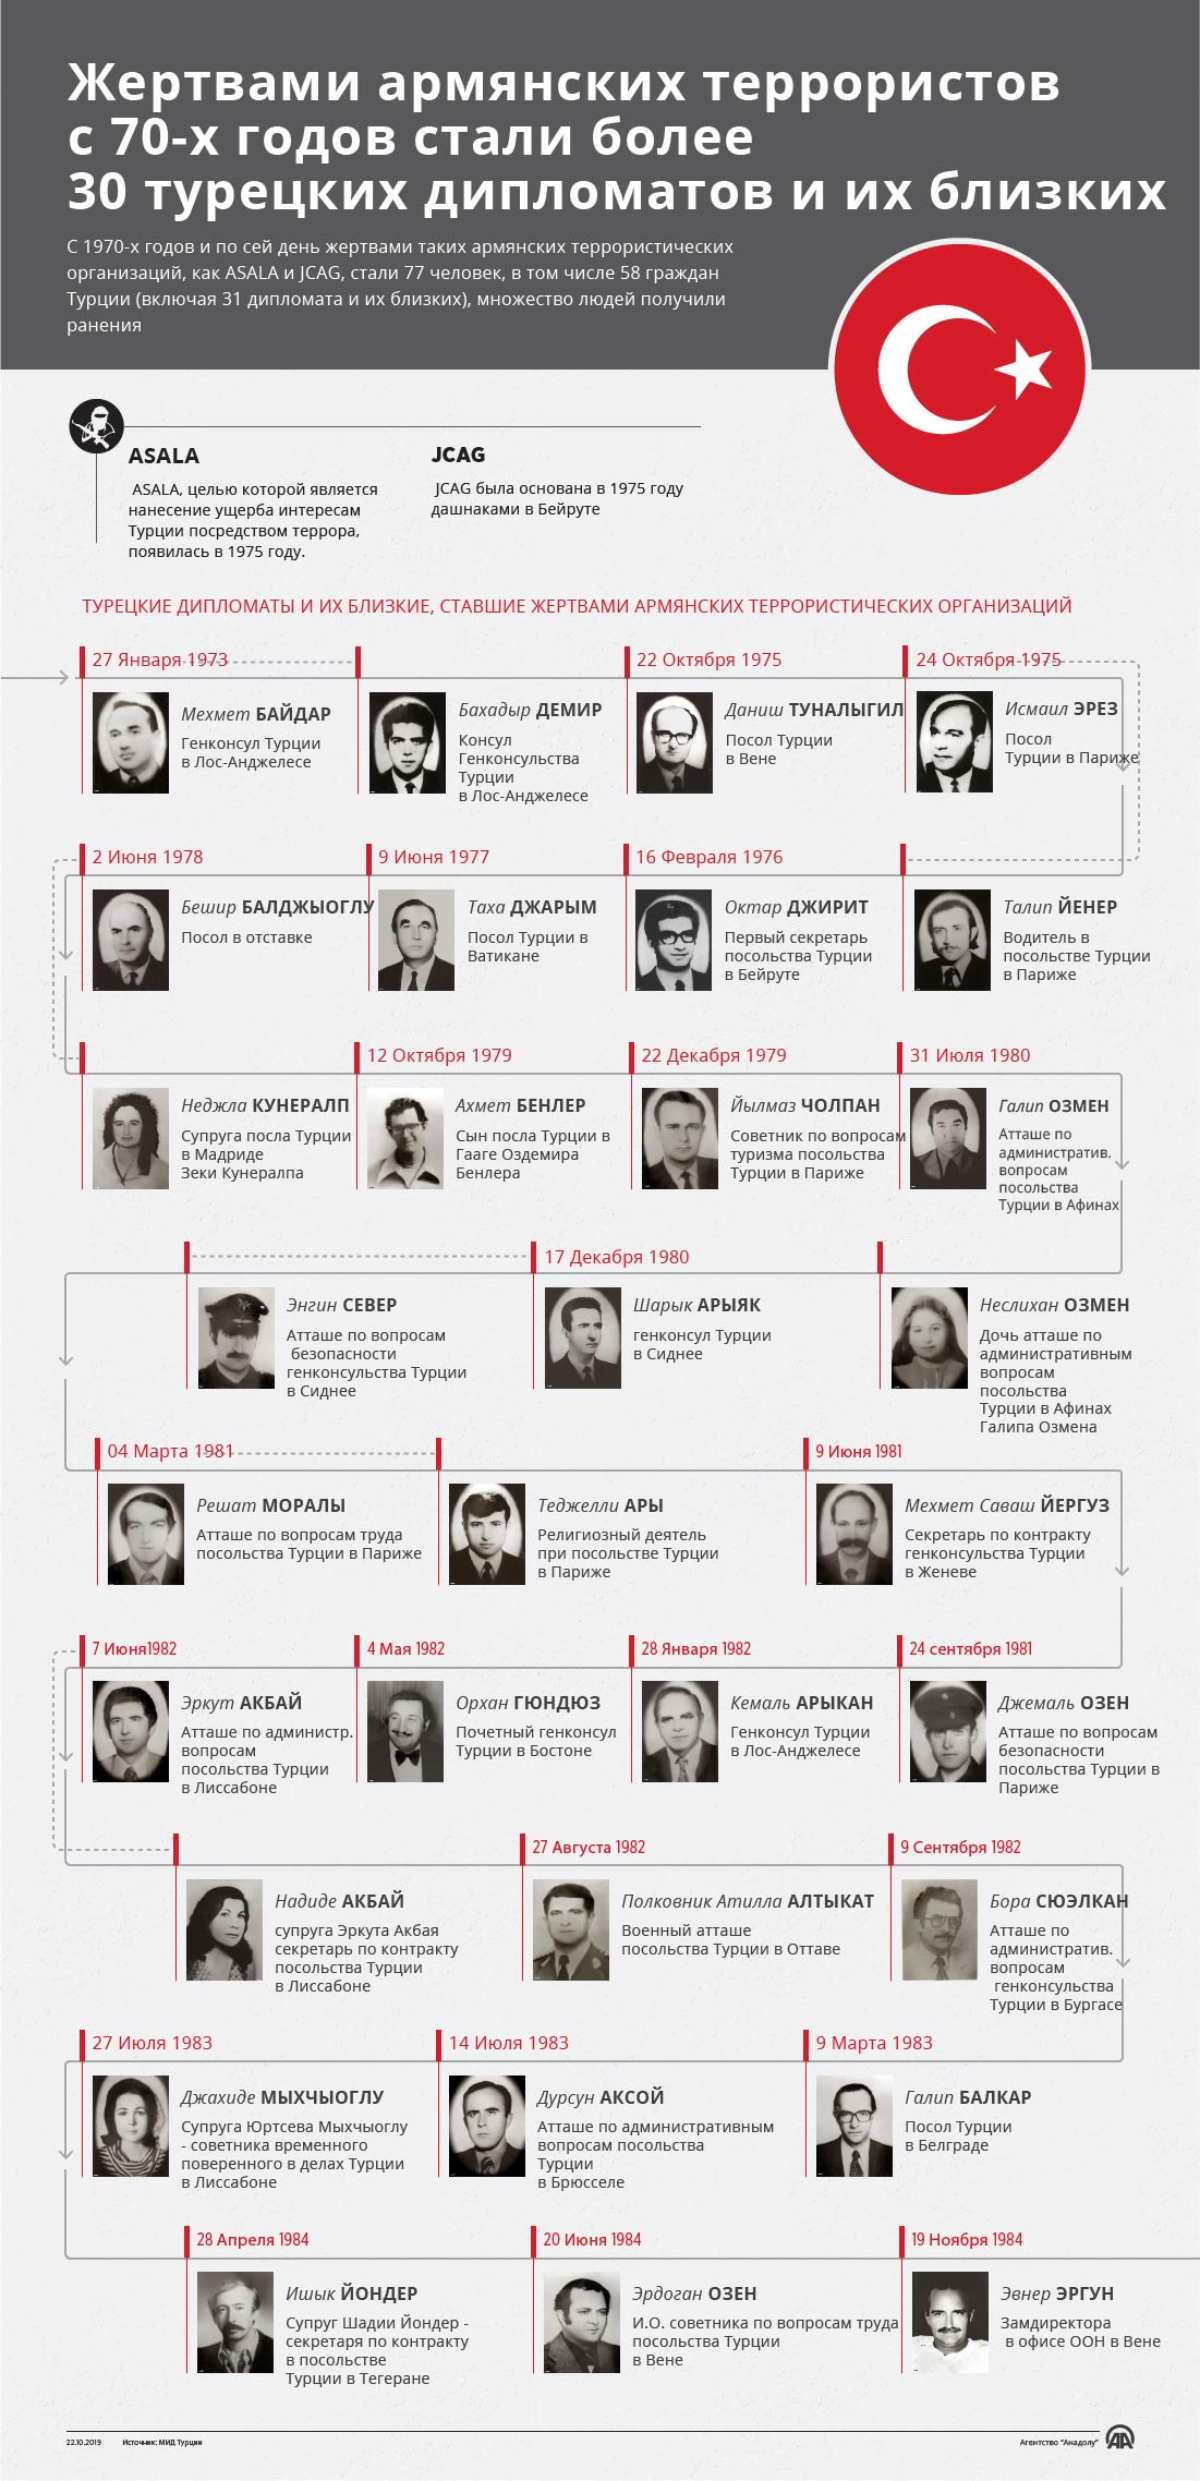 Жертвами армянских террористов с 70-х годов стали более 30 турецких дипломатов и их близких